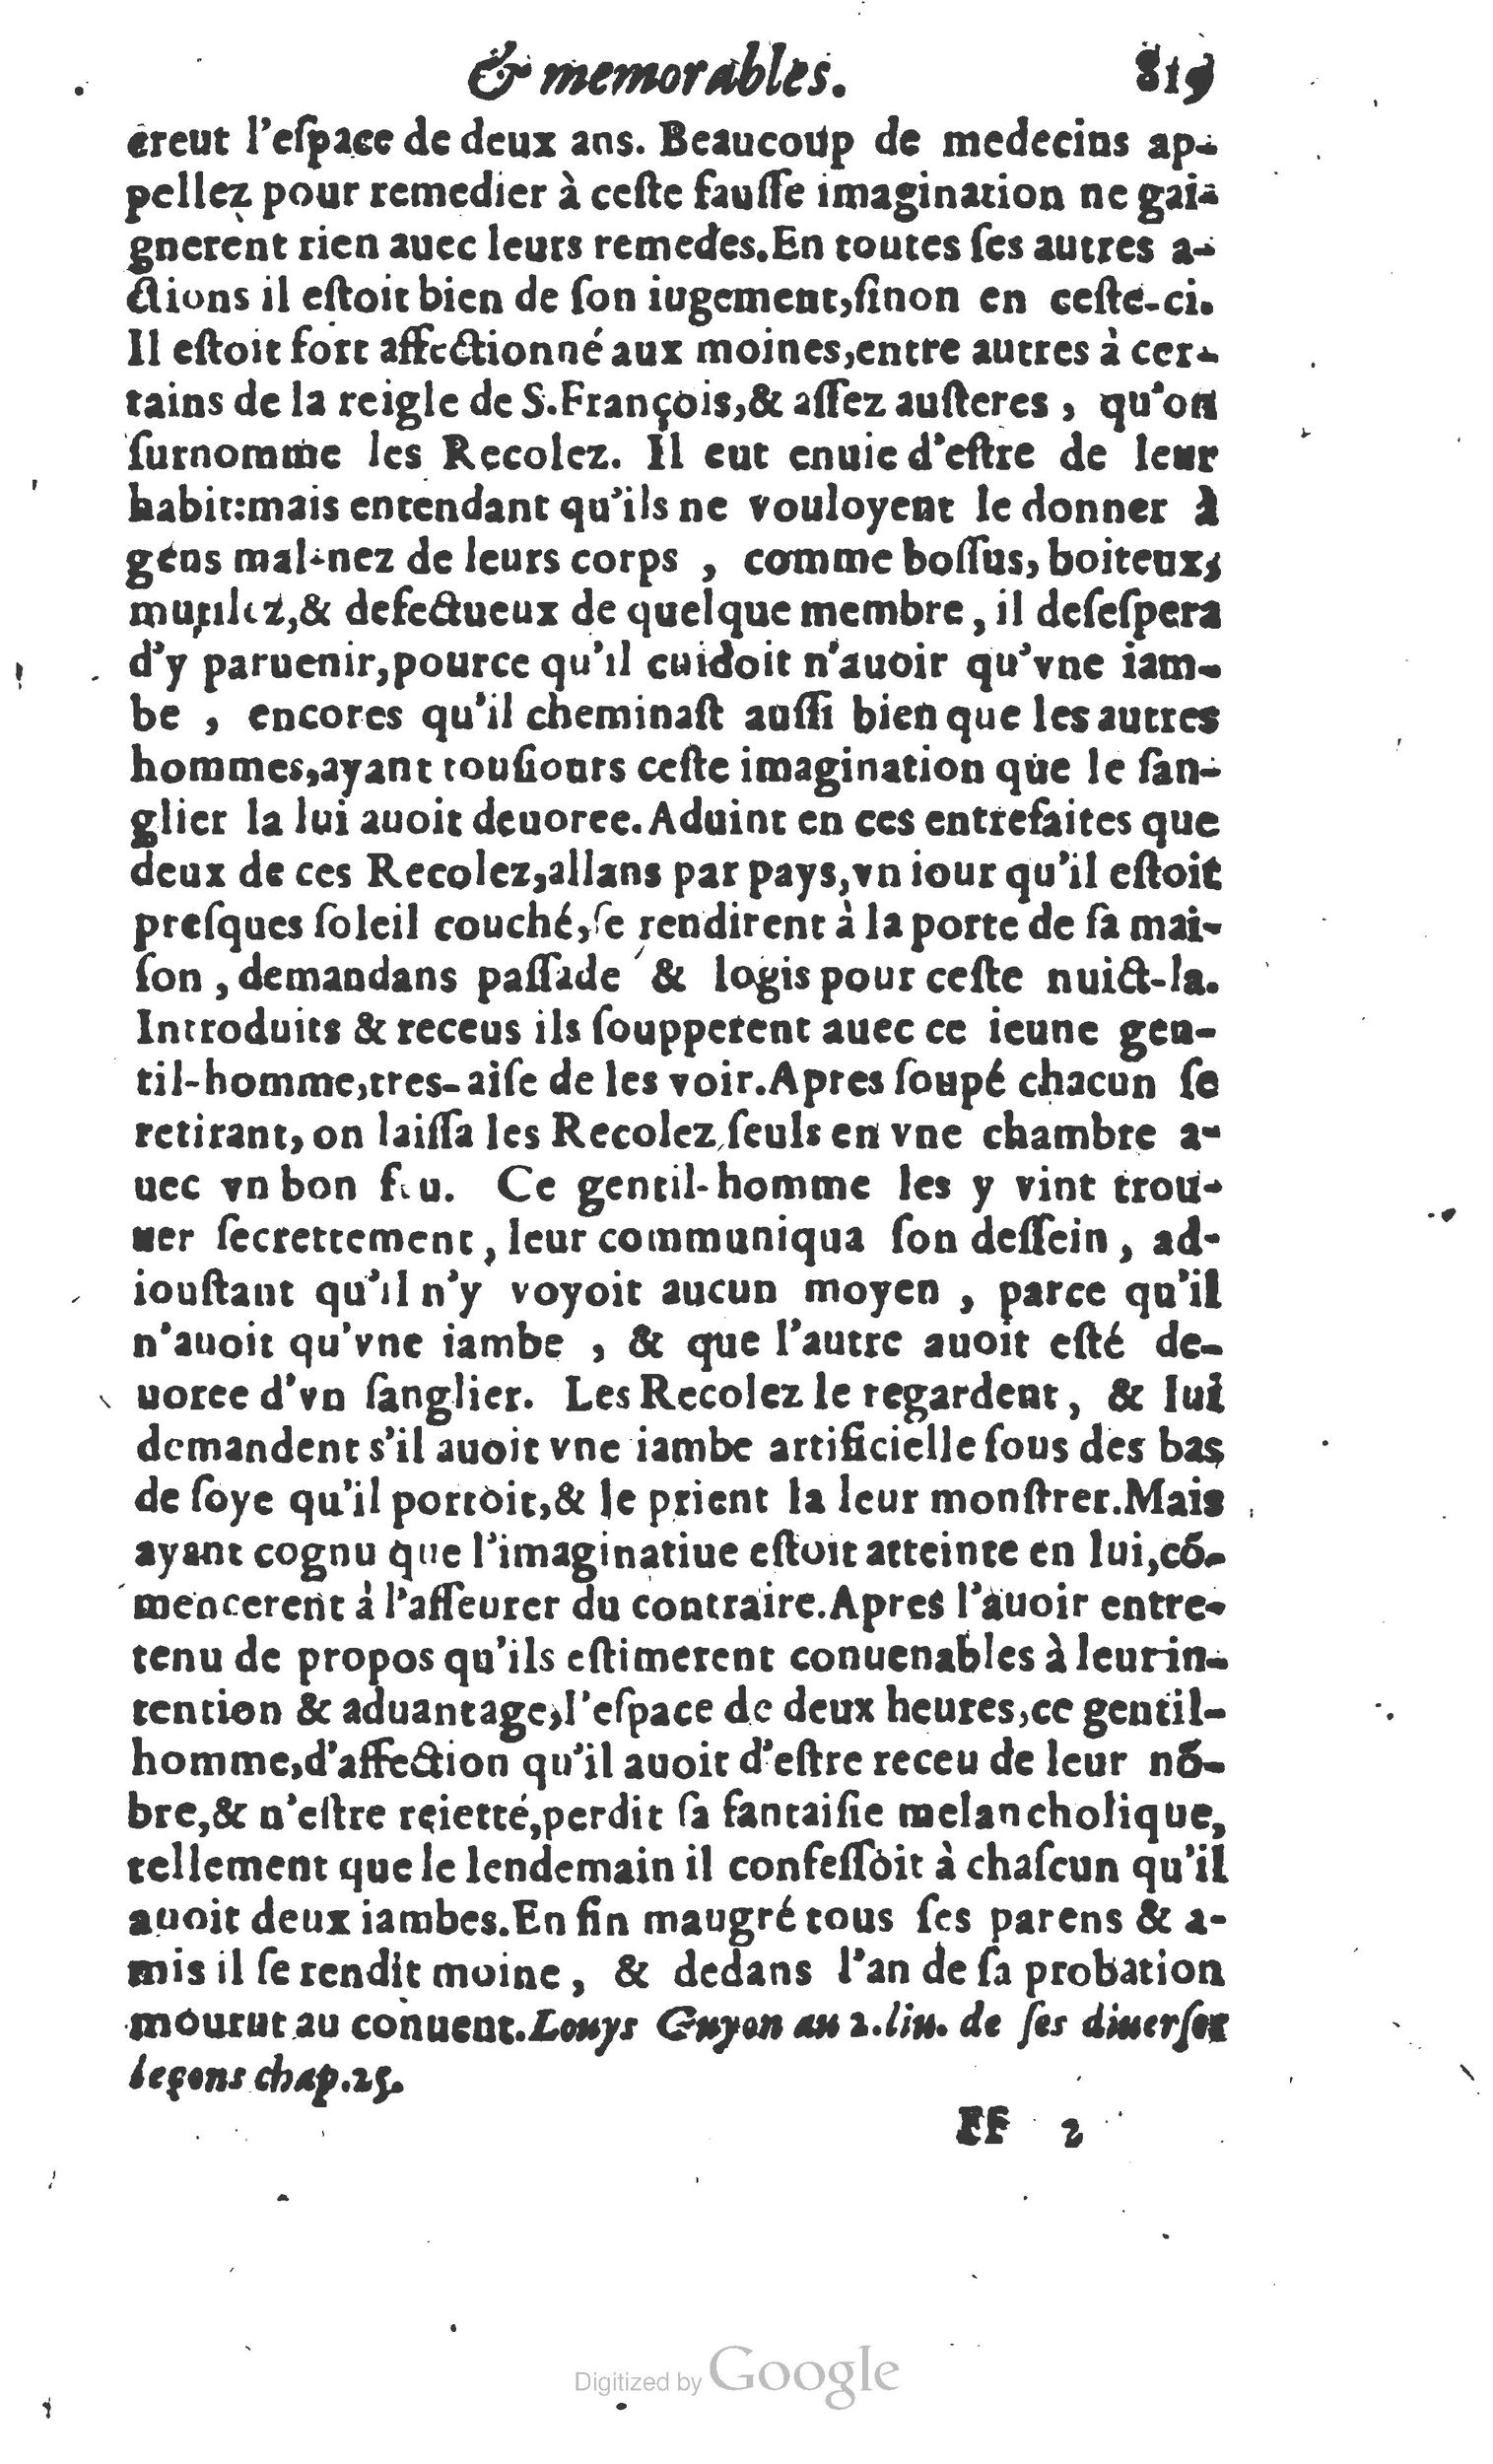 1610 Trésor d’histoires admirables et mémorables de nostre temps Marceau Princeton_Page_0840.jpg